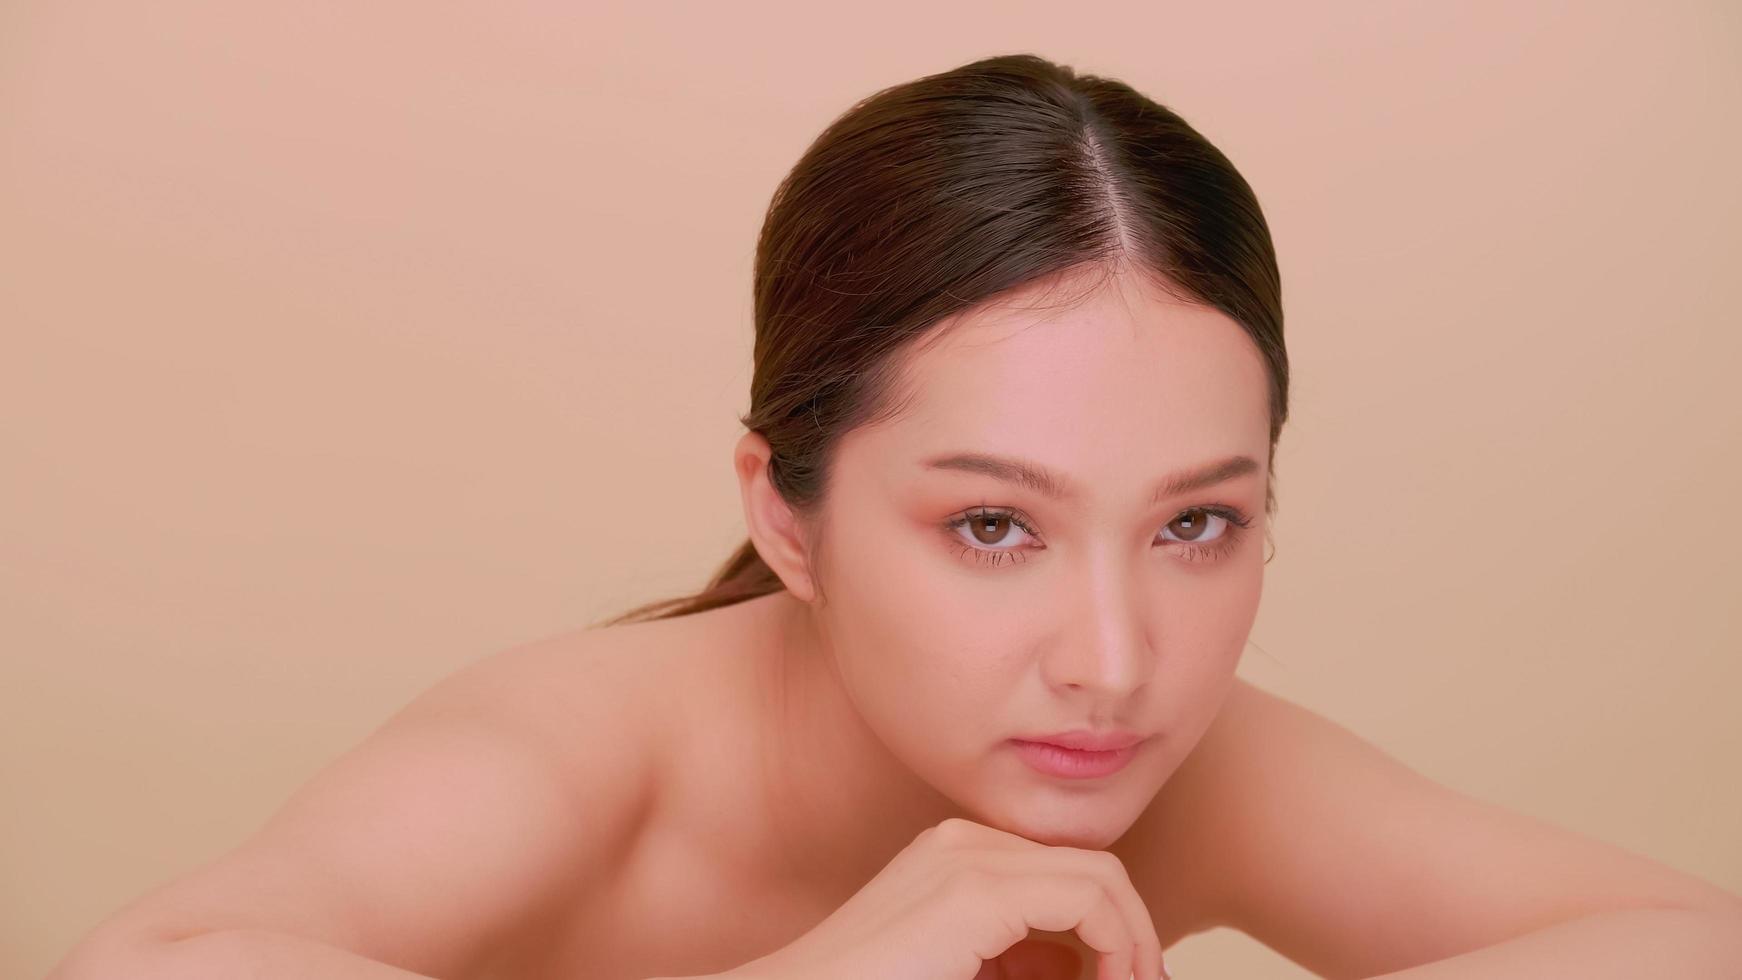 lindo rosto de jovem asiática com pele natural. retrato de uma garota atraente com maquiagem suave e pele perfeitamente bonita. foto